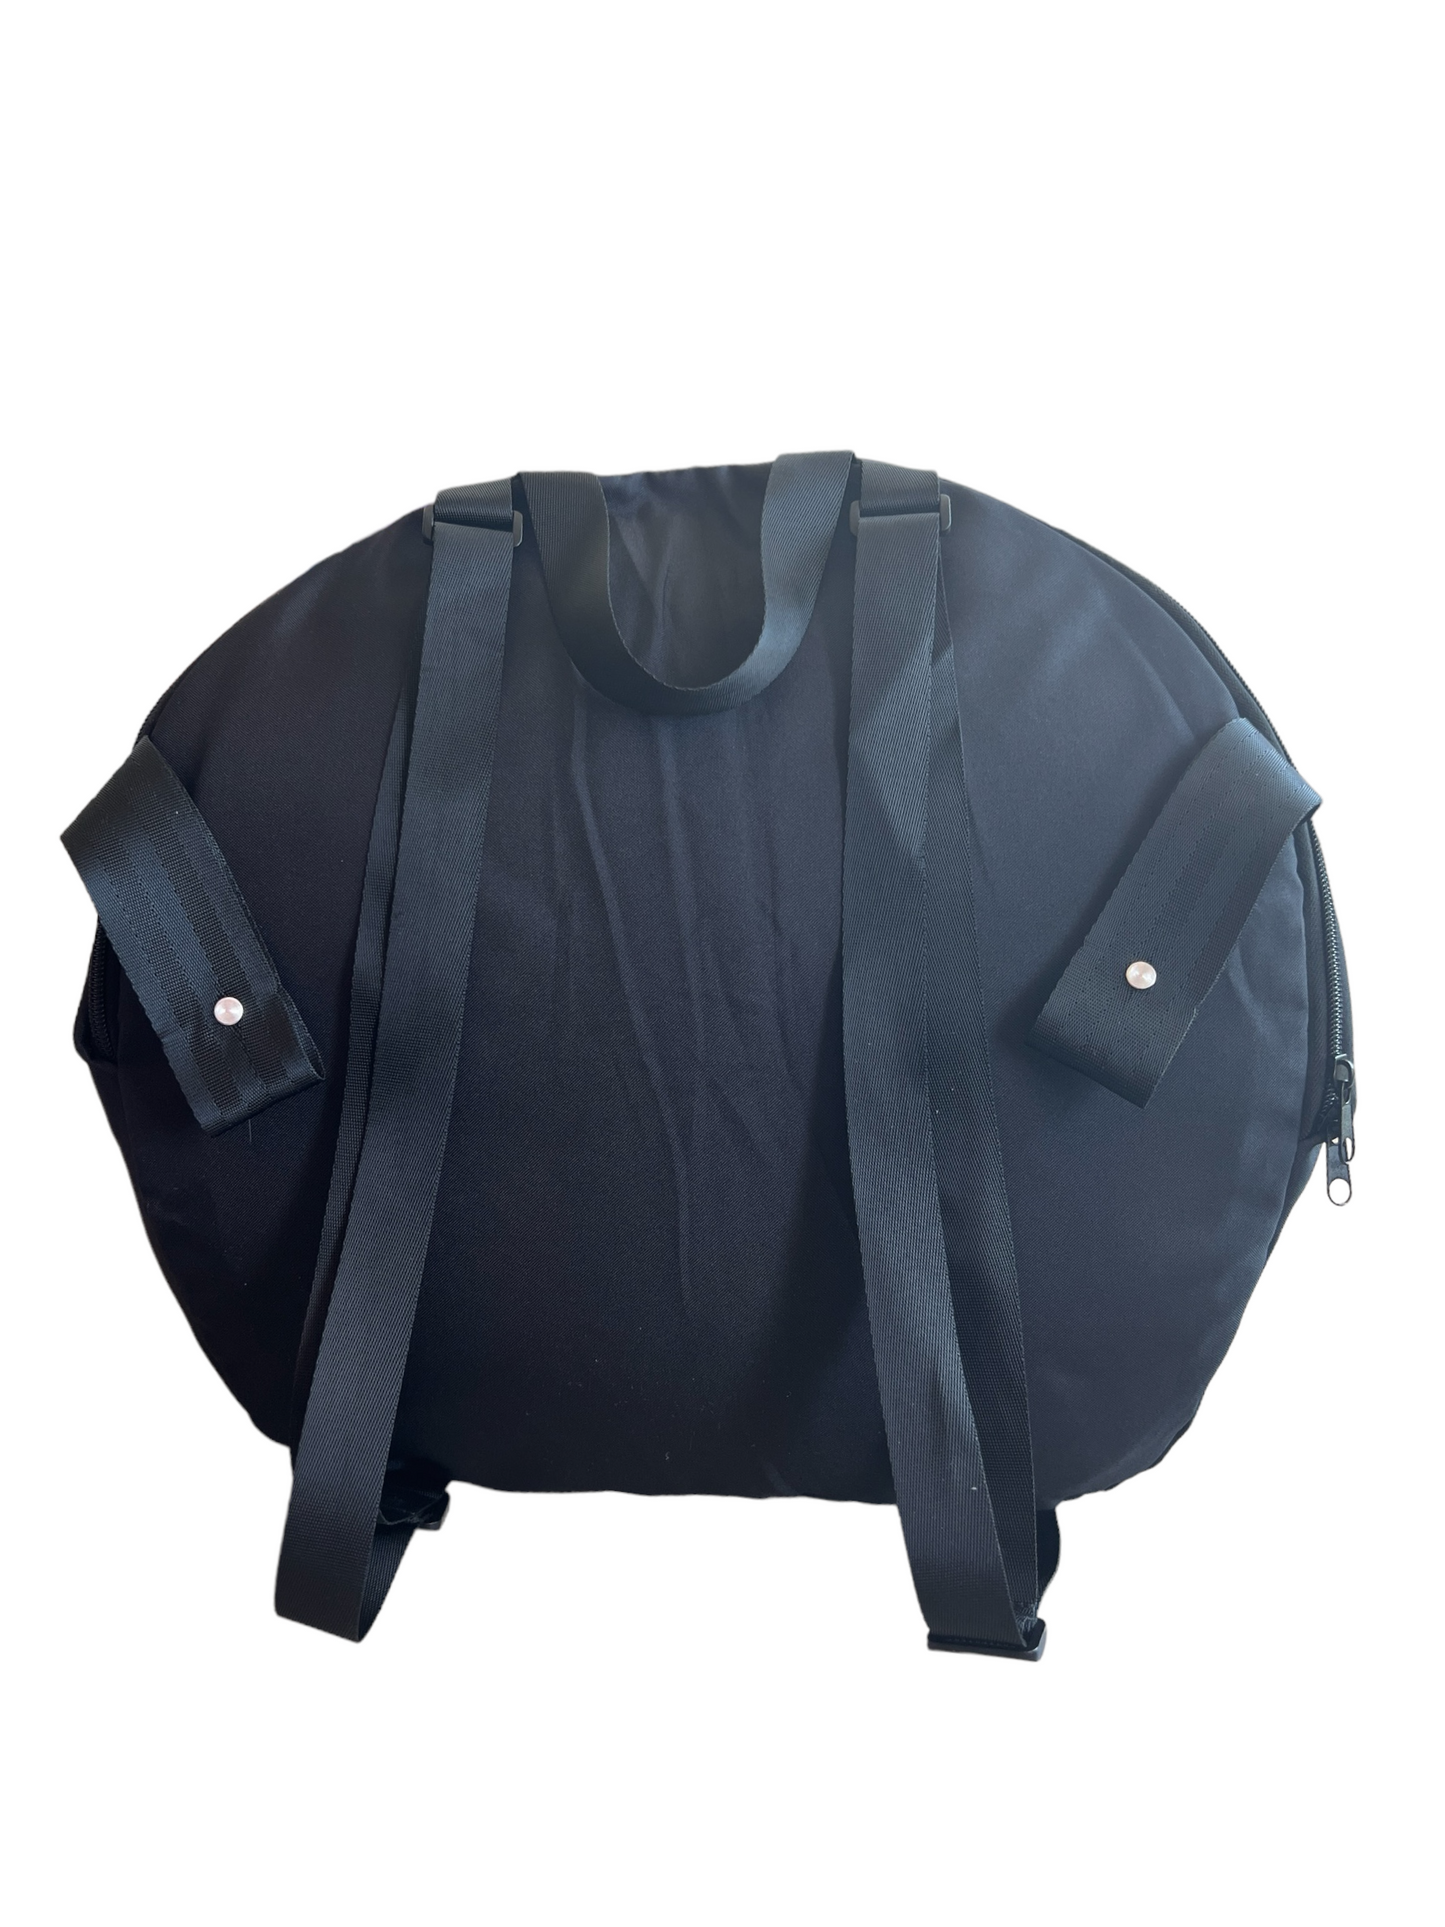 📸🎨 Oval Wheelchair 4 in 1 / Stroller Backpack Bag Backpacks SPIRIT SPARKPLUGS   